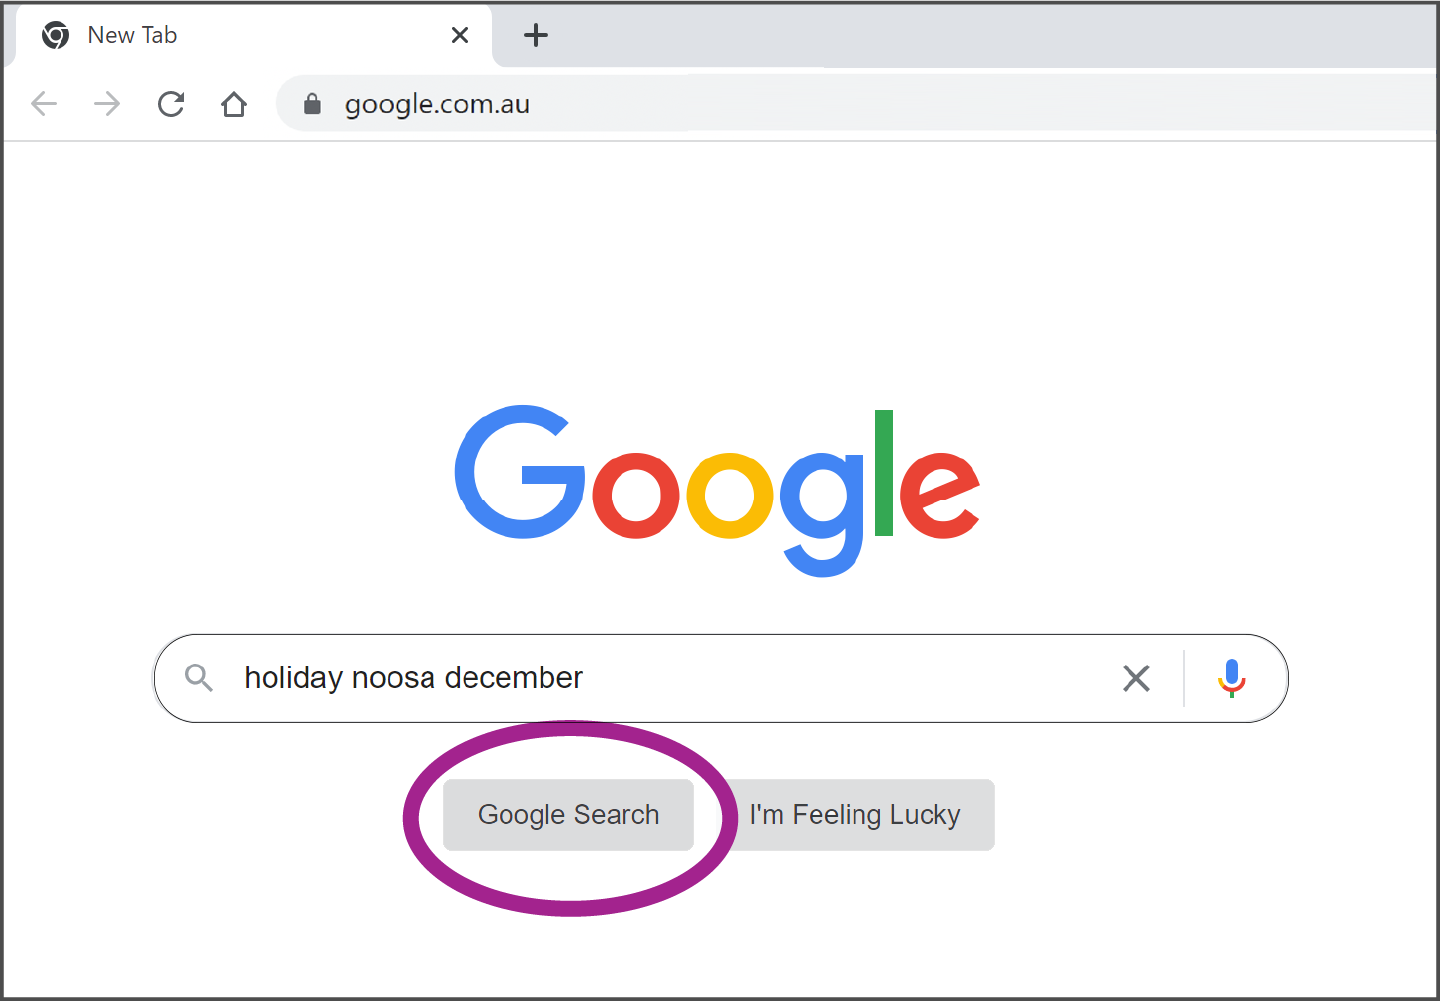 Un término de búsqueda escrito en el cuadro, y el botón de Buscar con Google (Google Search) resaltado